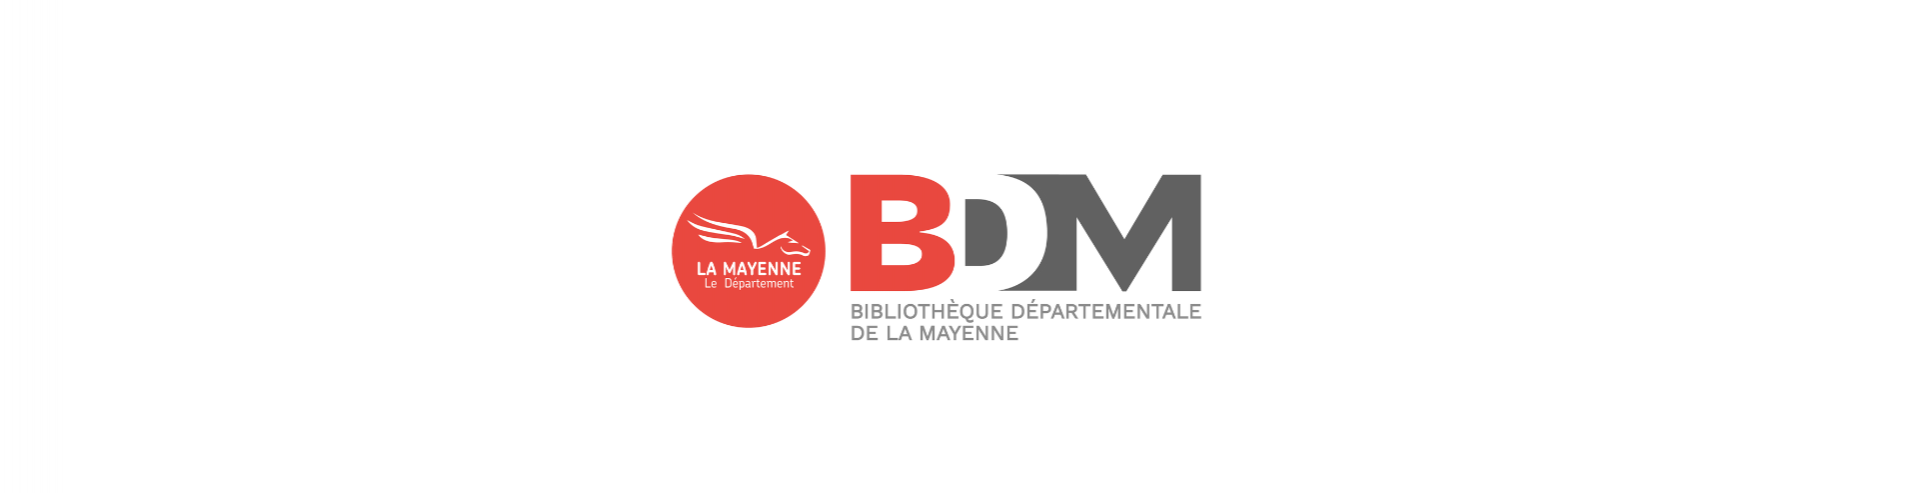 BDM - Bibliothèque départementale de la Mayenne